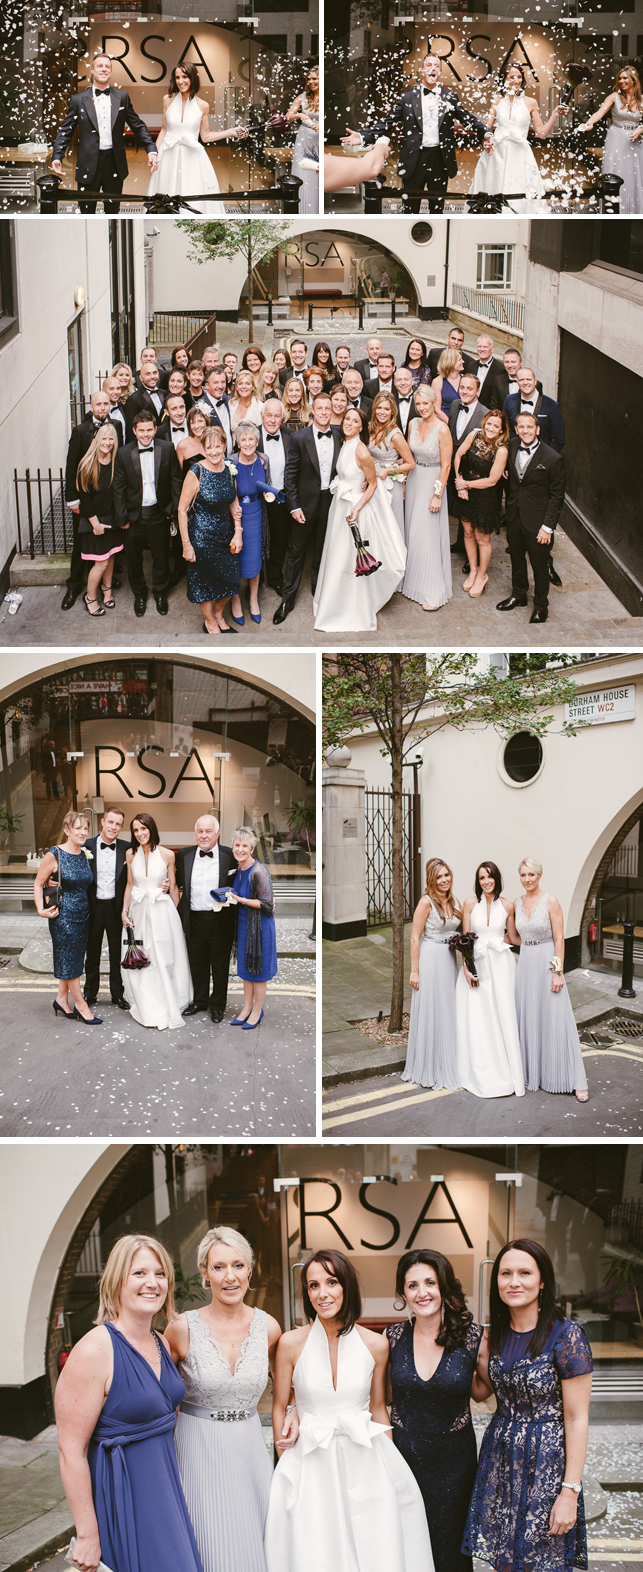 lisa-real-bride-jesus-peiro-6000-contemporary-wedding-dress-miss-bush-surrey-bridal-boutique-ripley-surrey-london-12